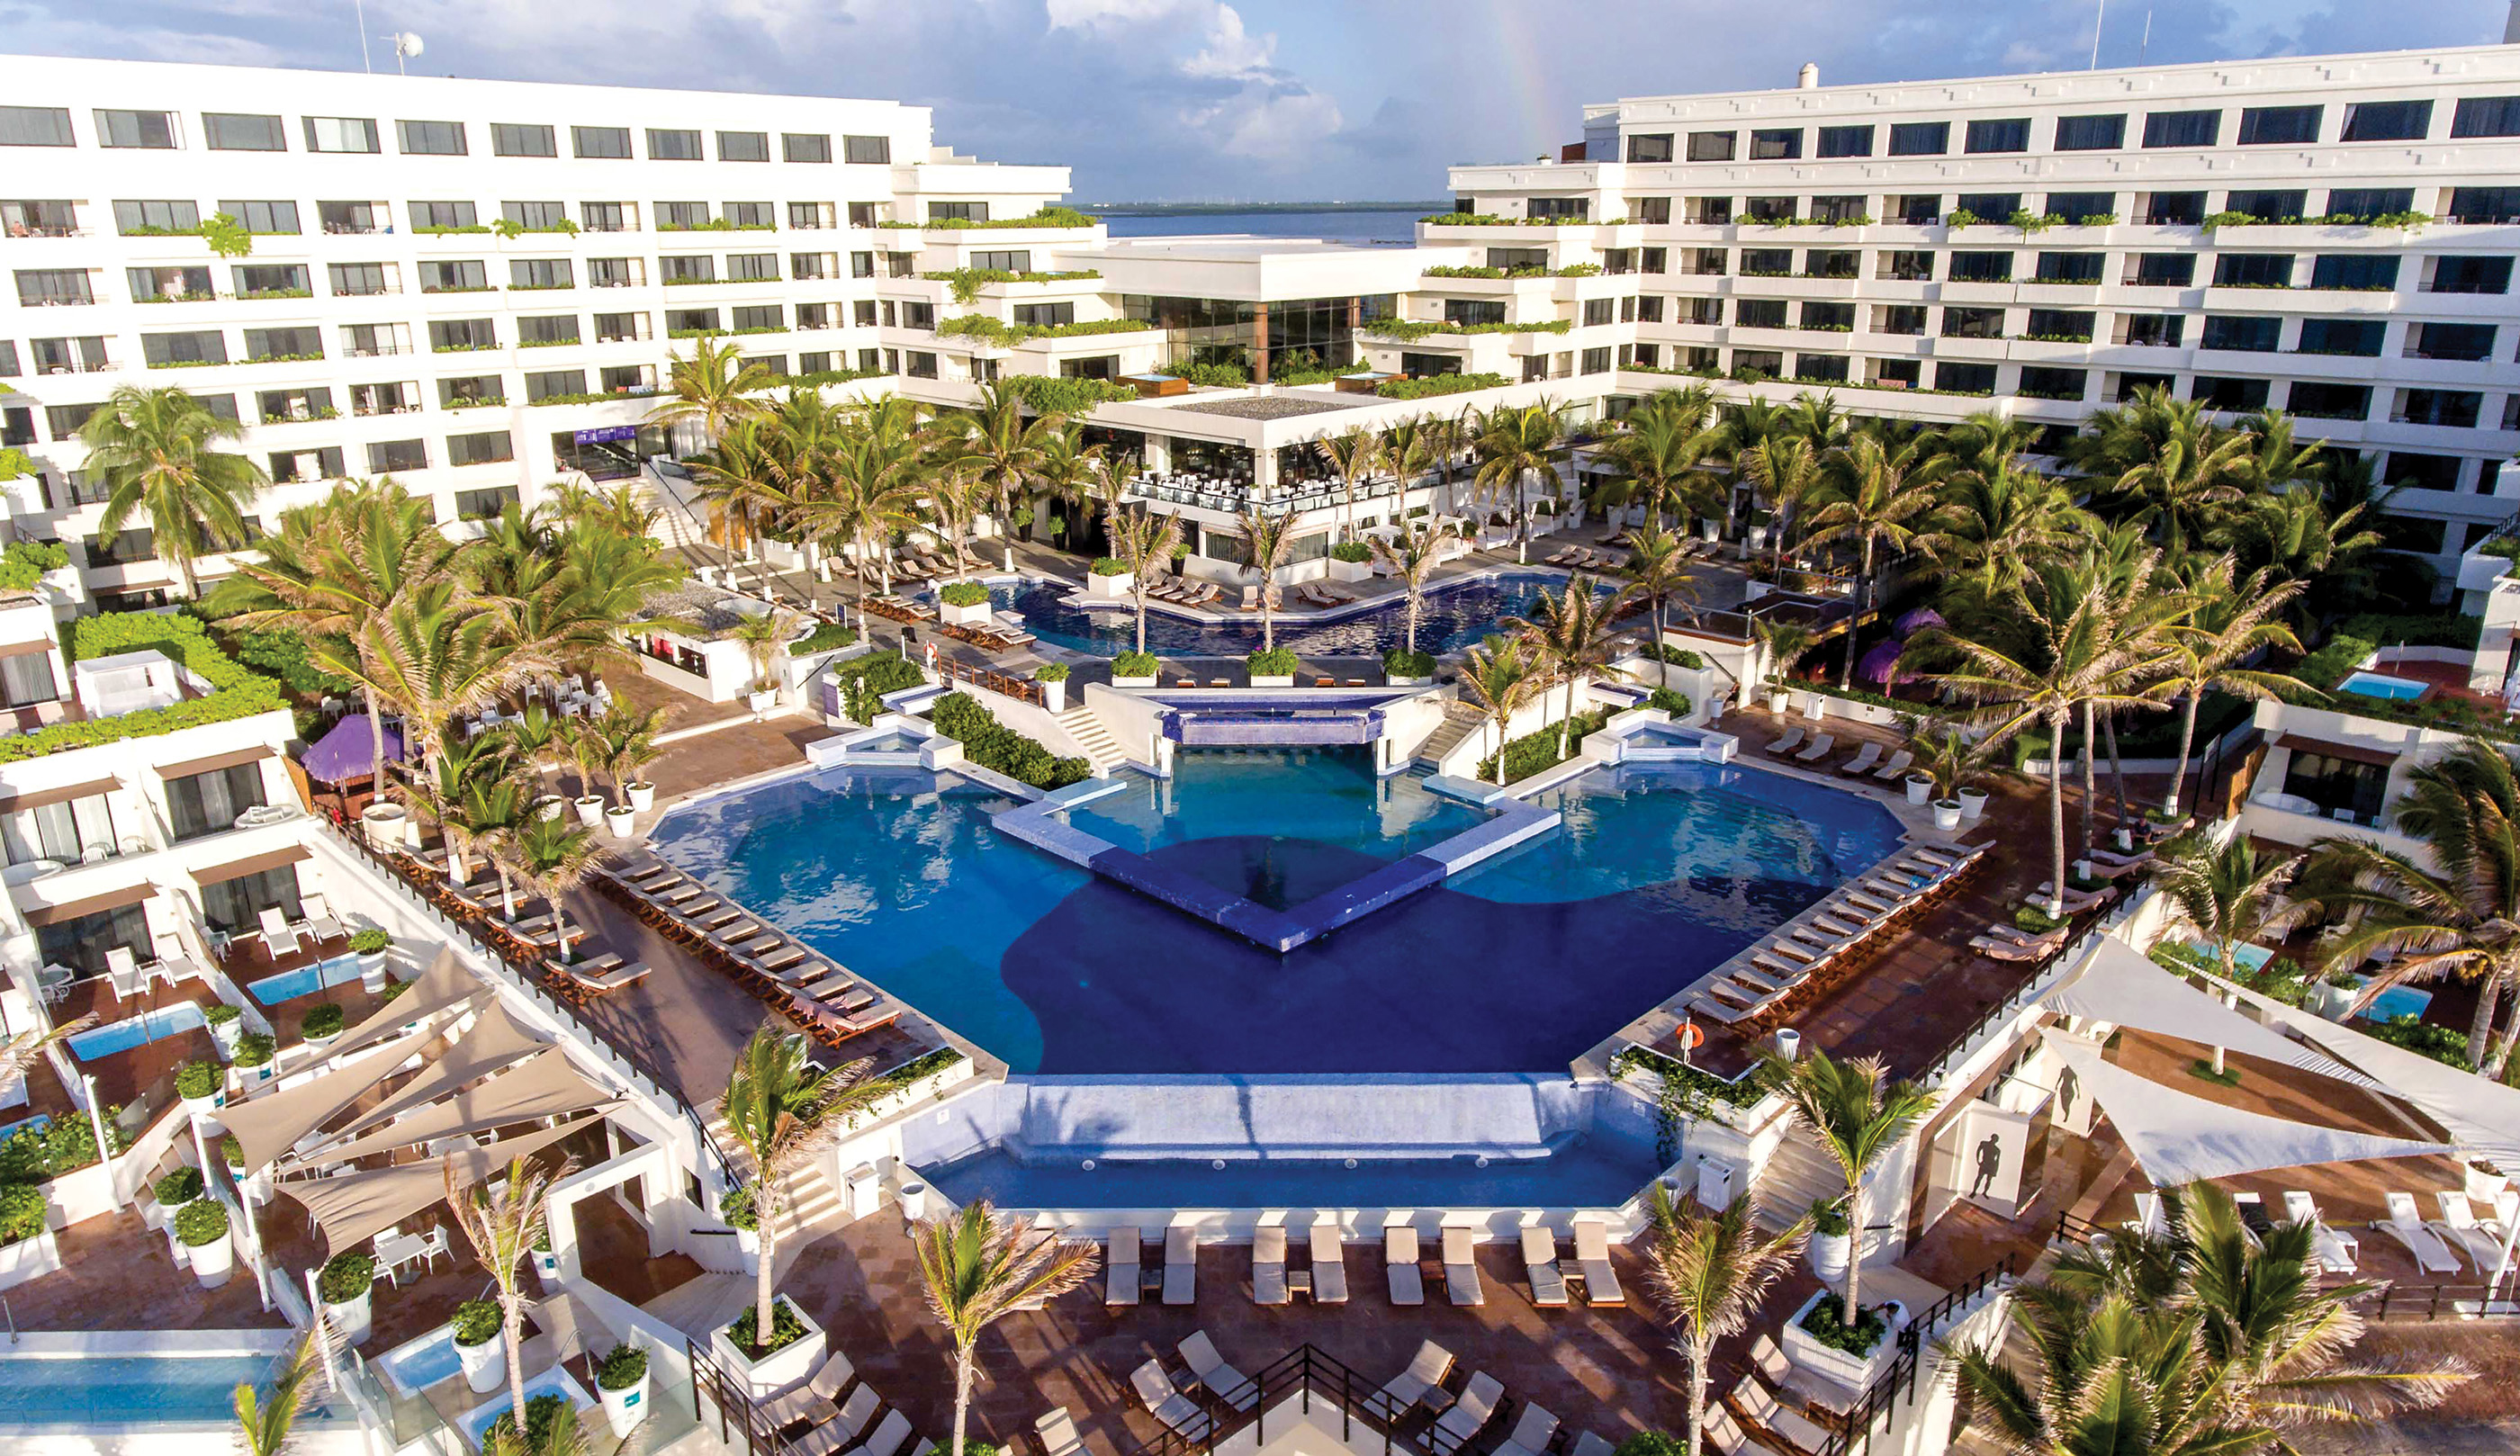 Now Emerald Cancun | WestJet official site